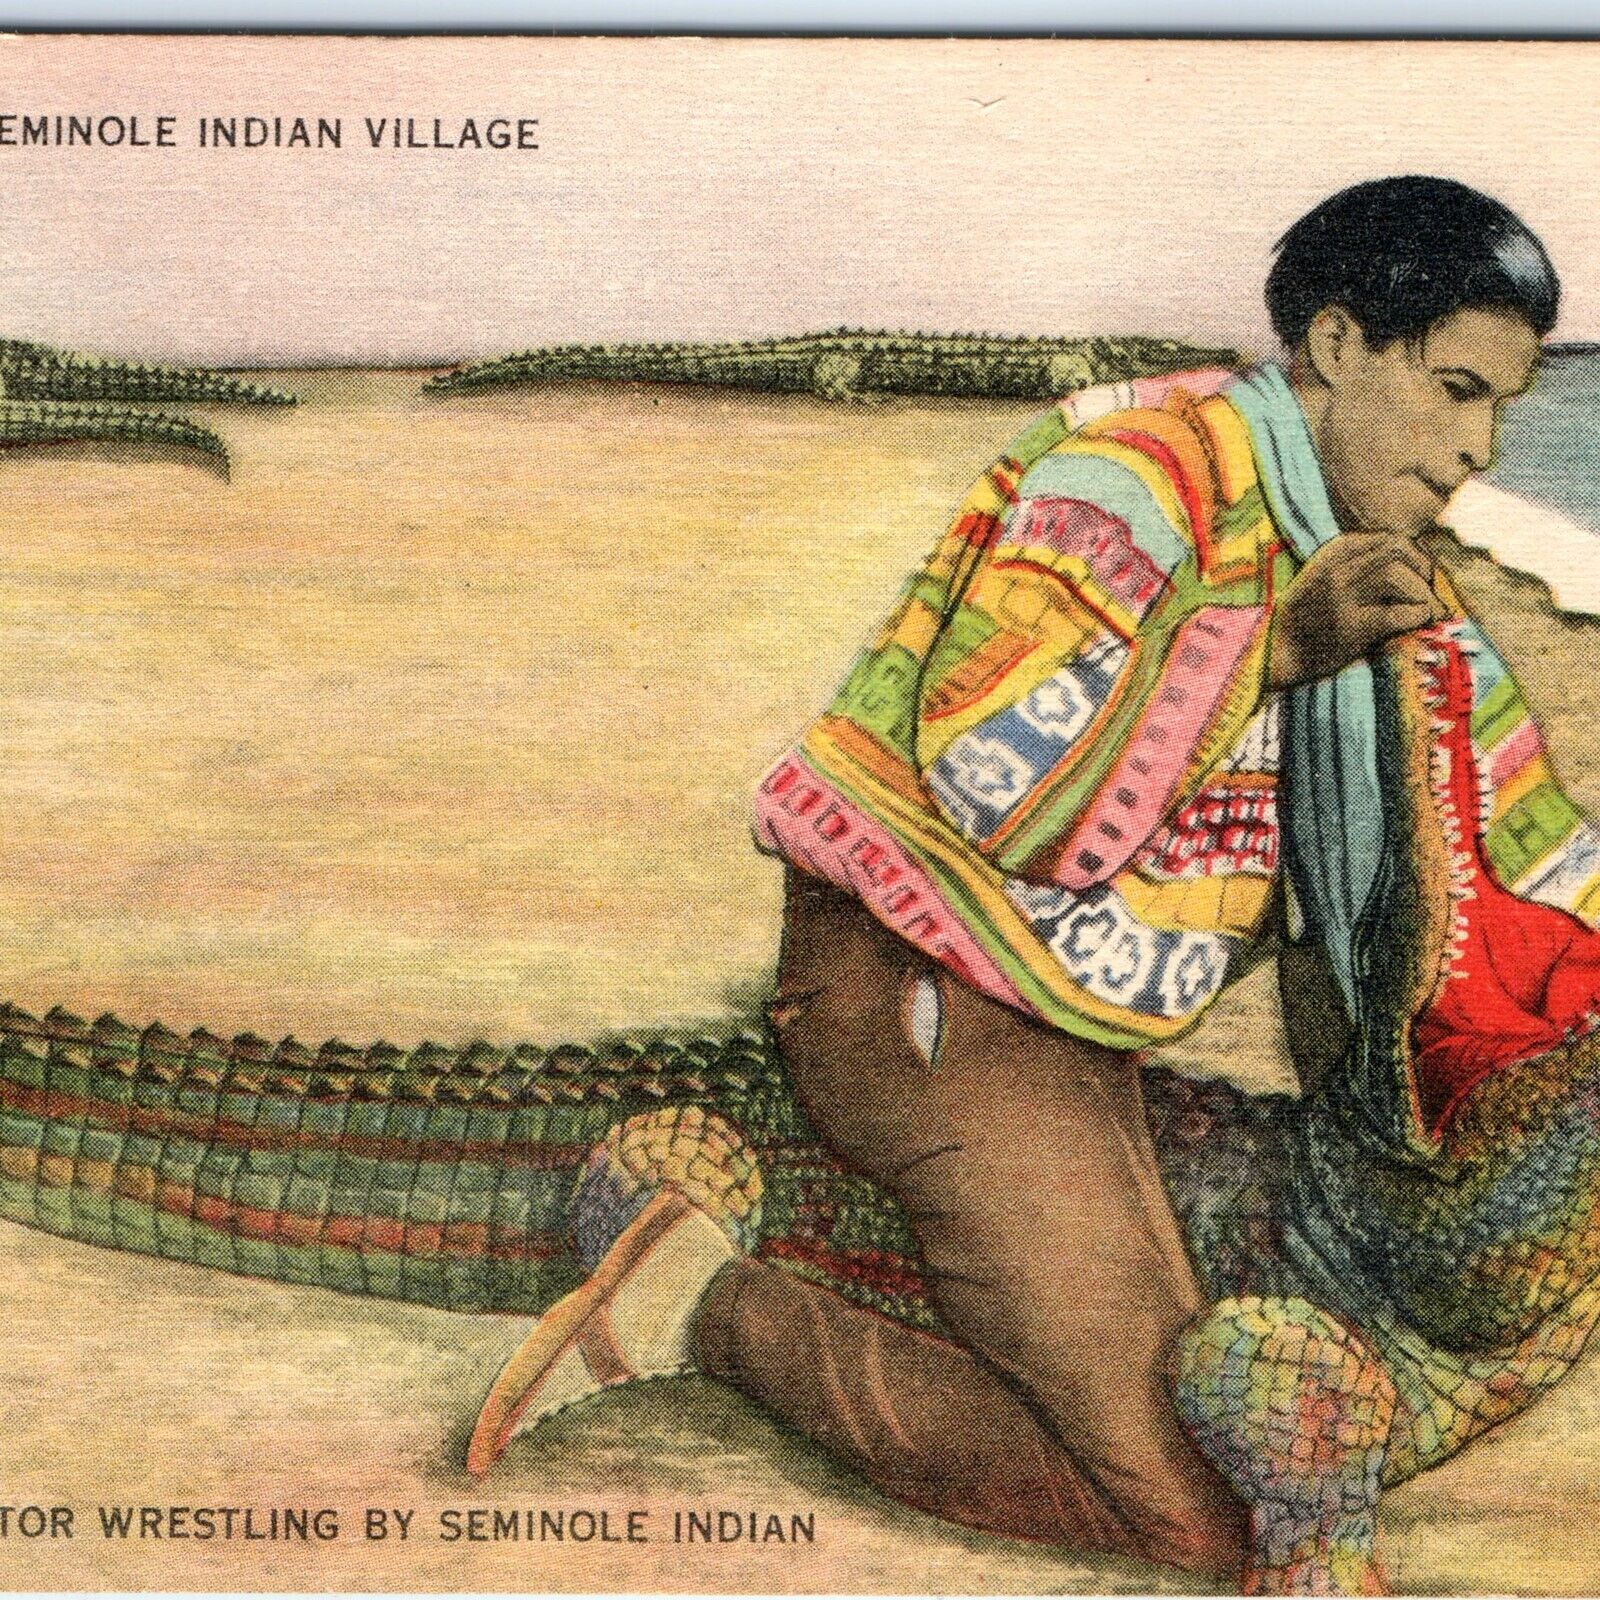 c1940s Miami Musa Isle Seminole Indian Village Alligator Wrestling Postcard A117